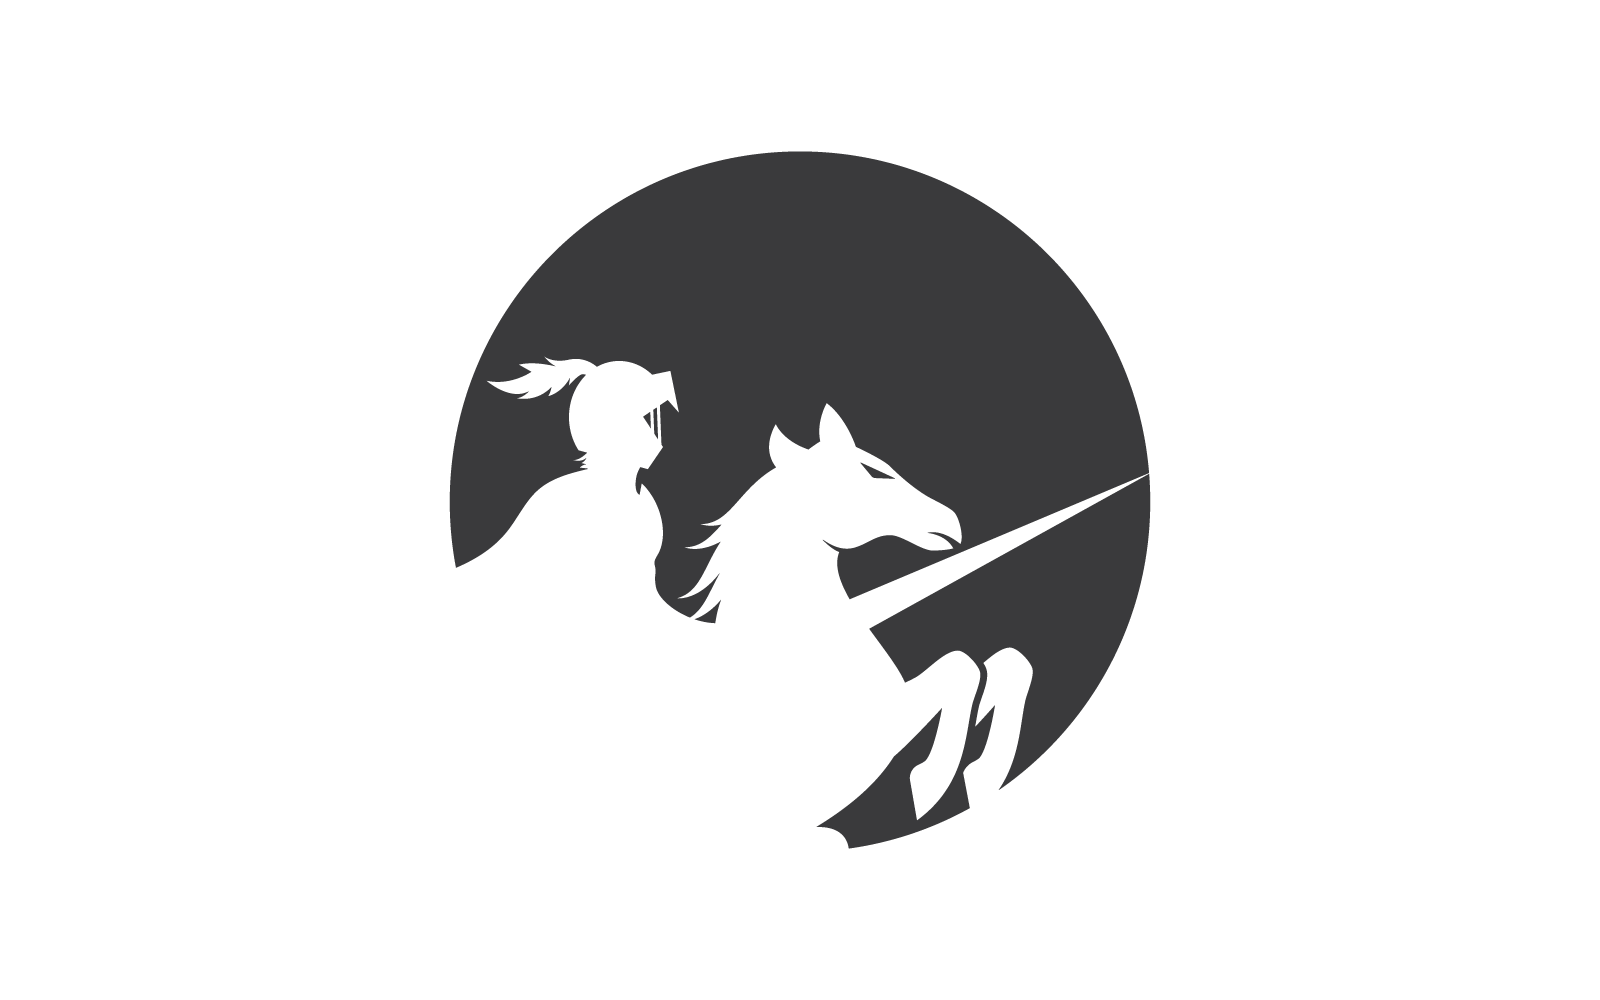 Horse knight hero logo illustration vector